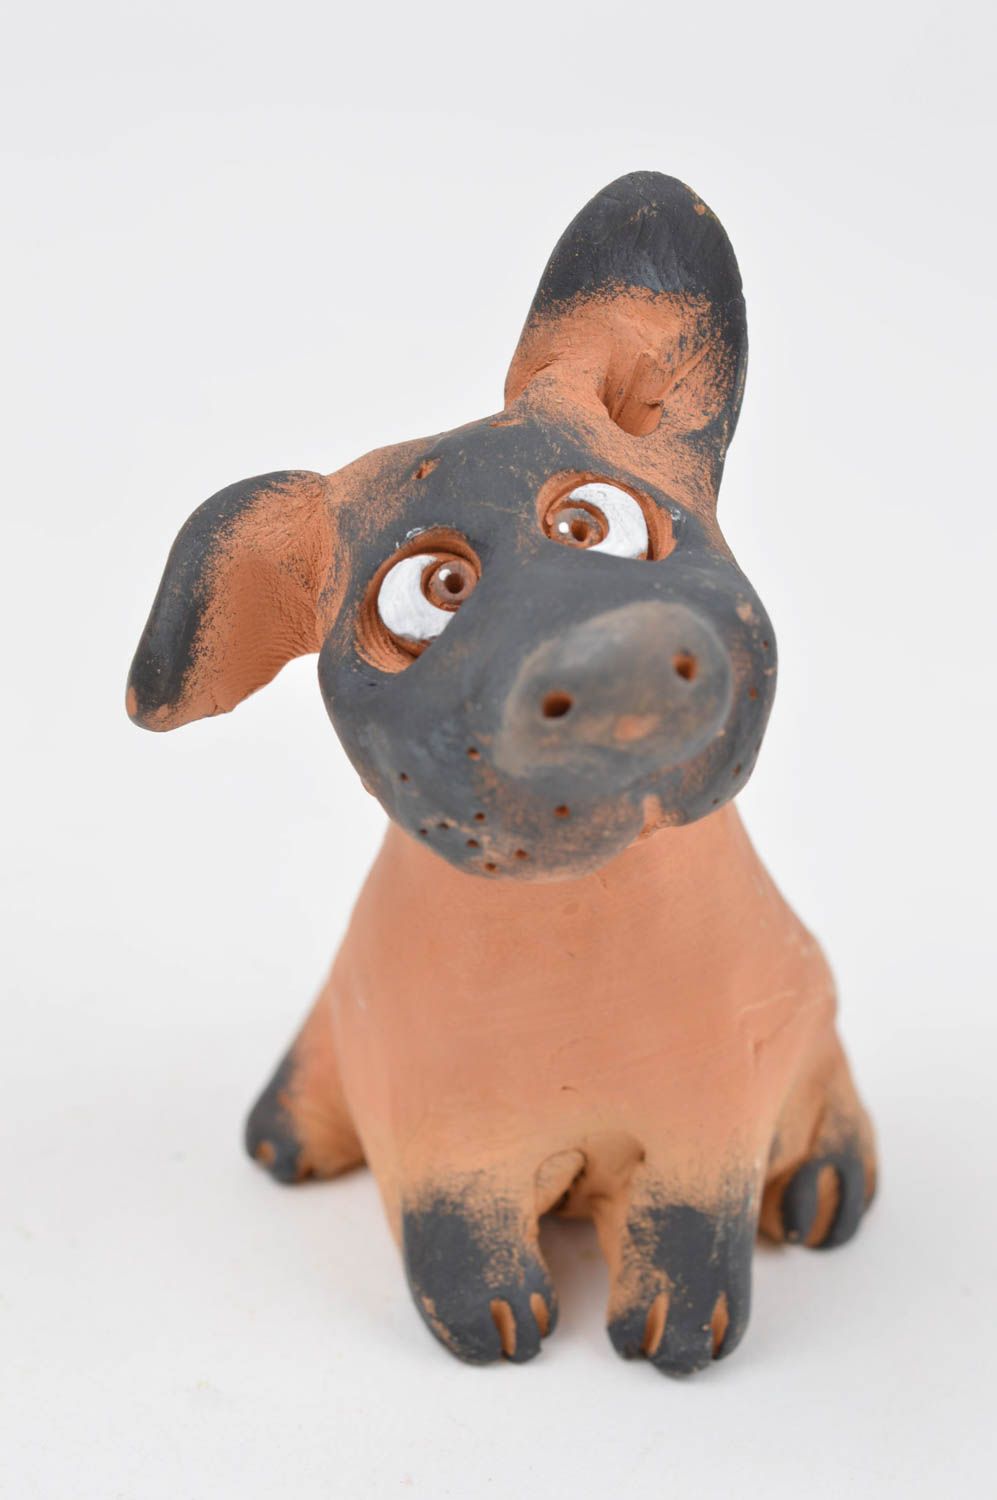 Статуэтка животного собаки ручной работы статуэтка для декора фигурка из глины фото 3